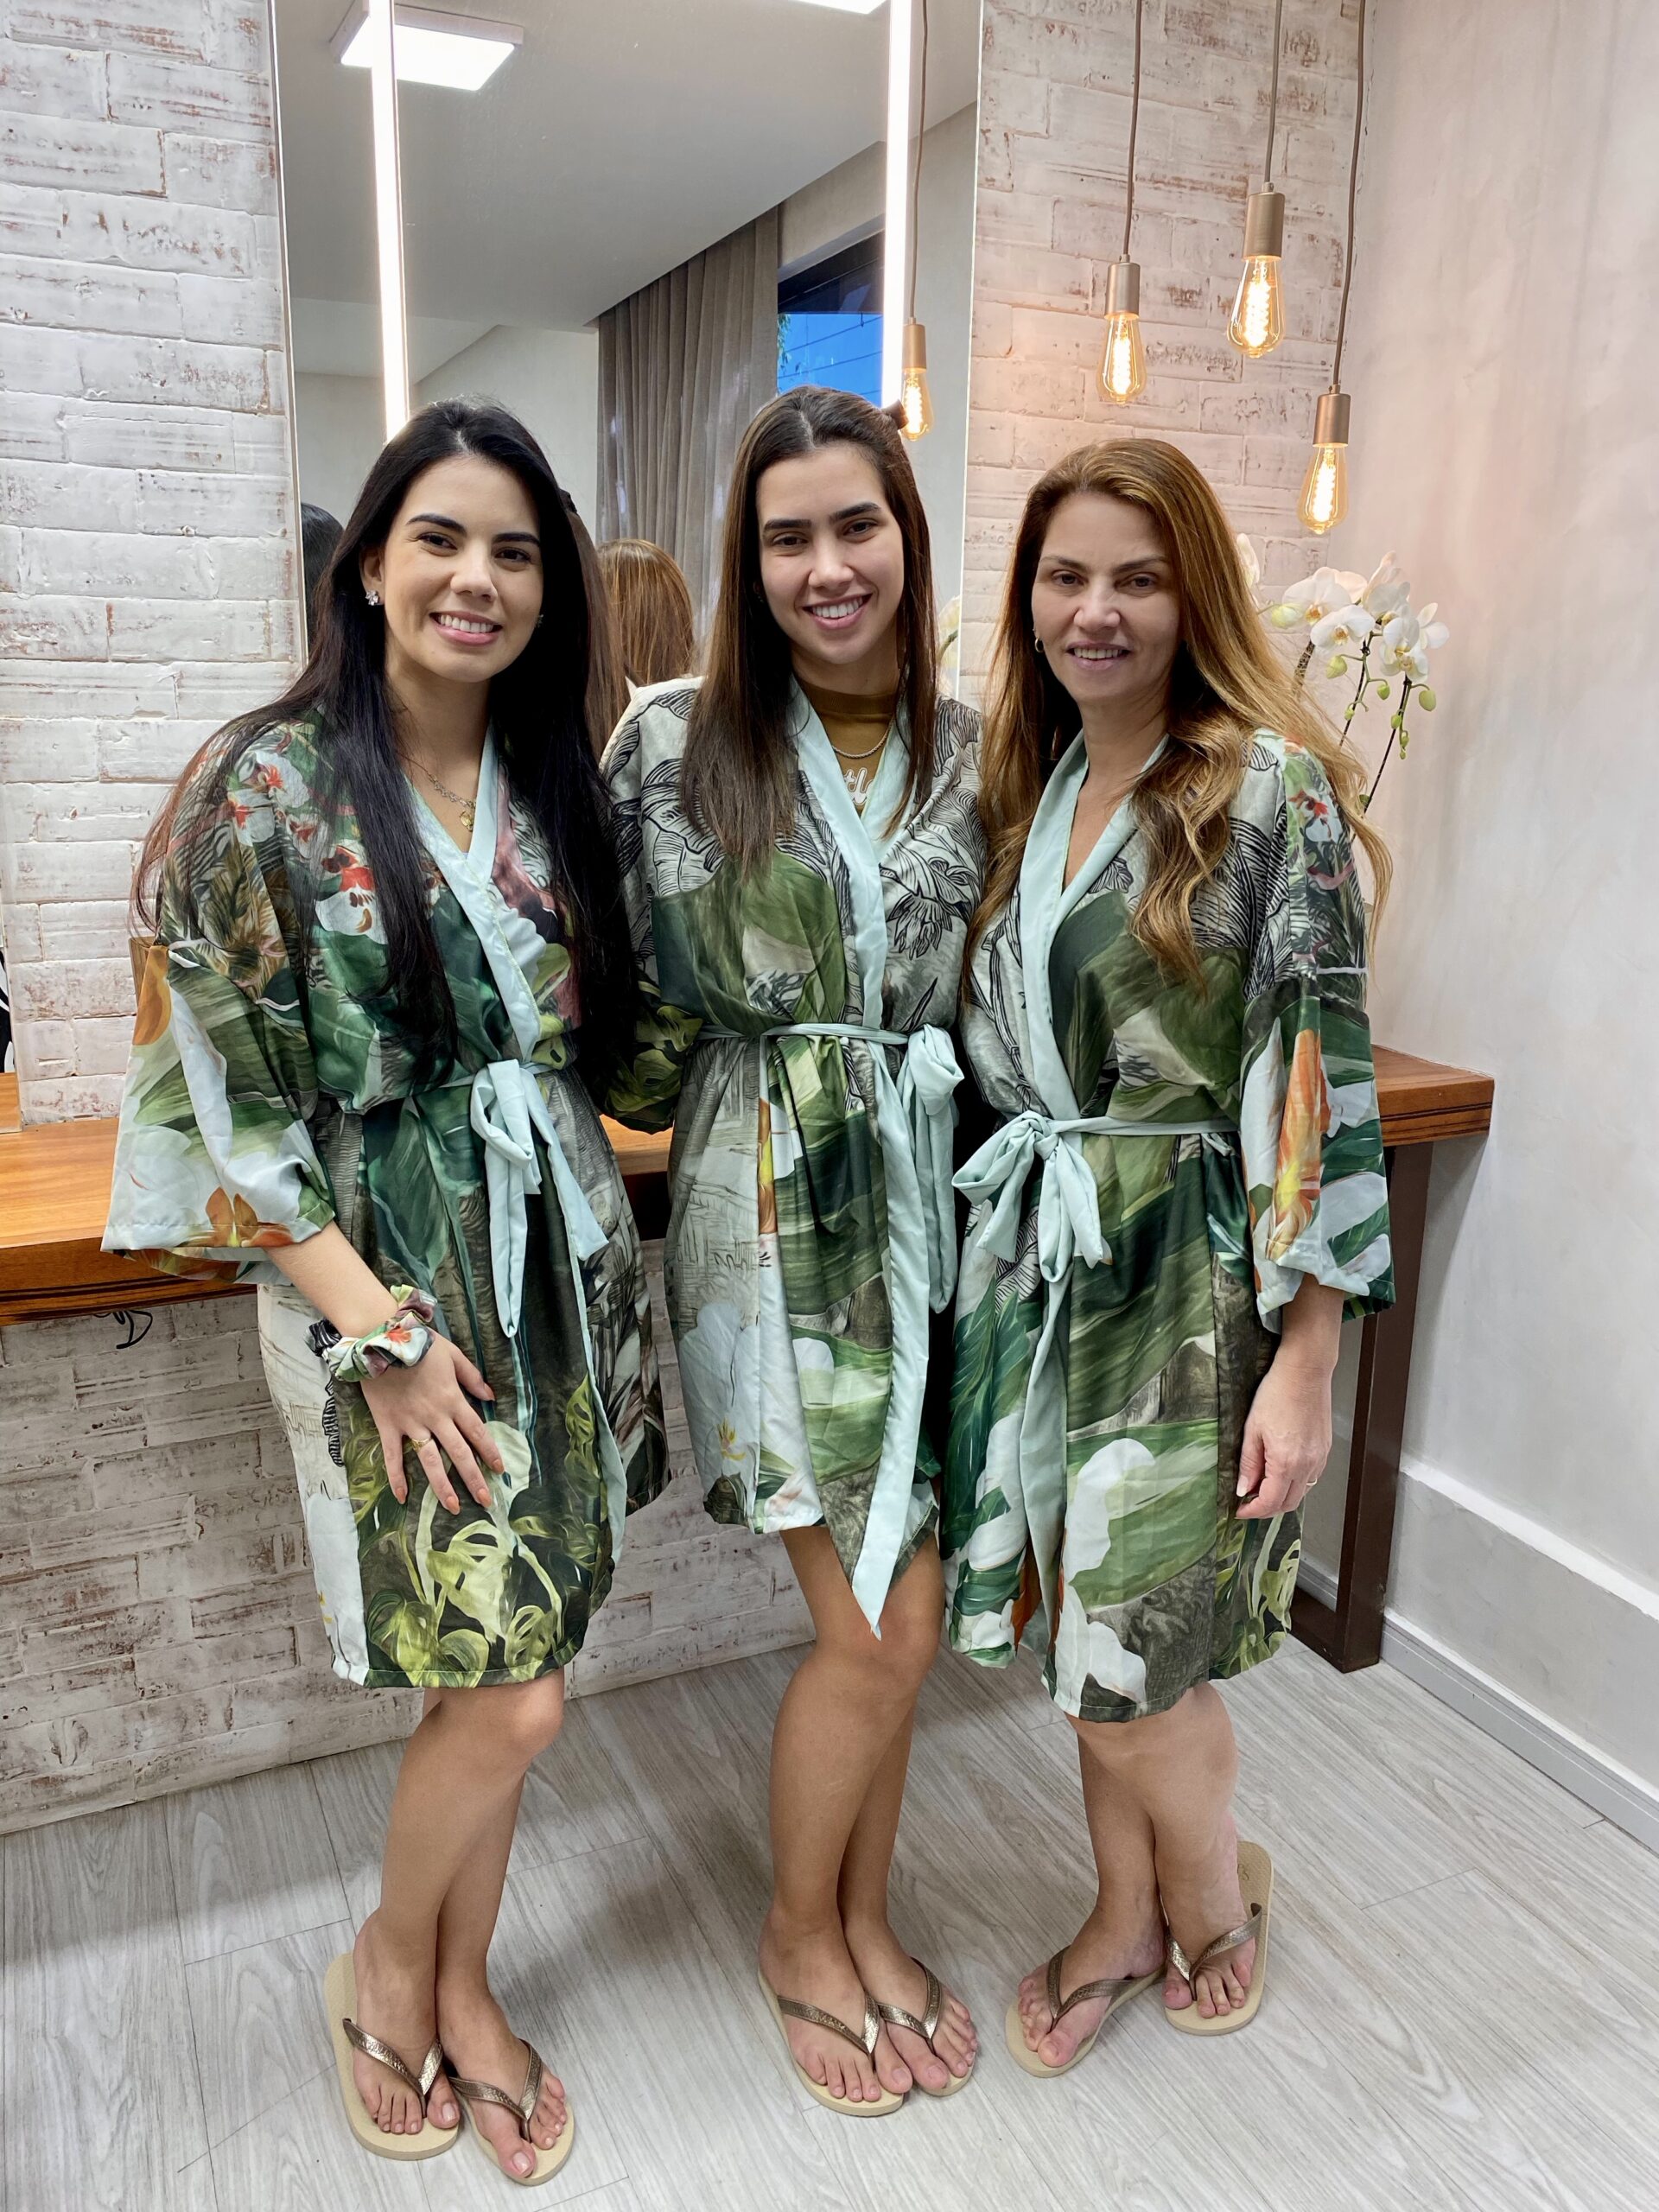 Casa Linda Flor inaugura novo espaço para noivas com Suzana Geleilate